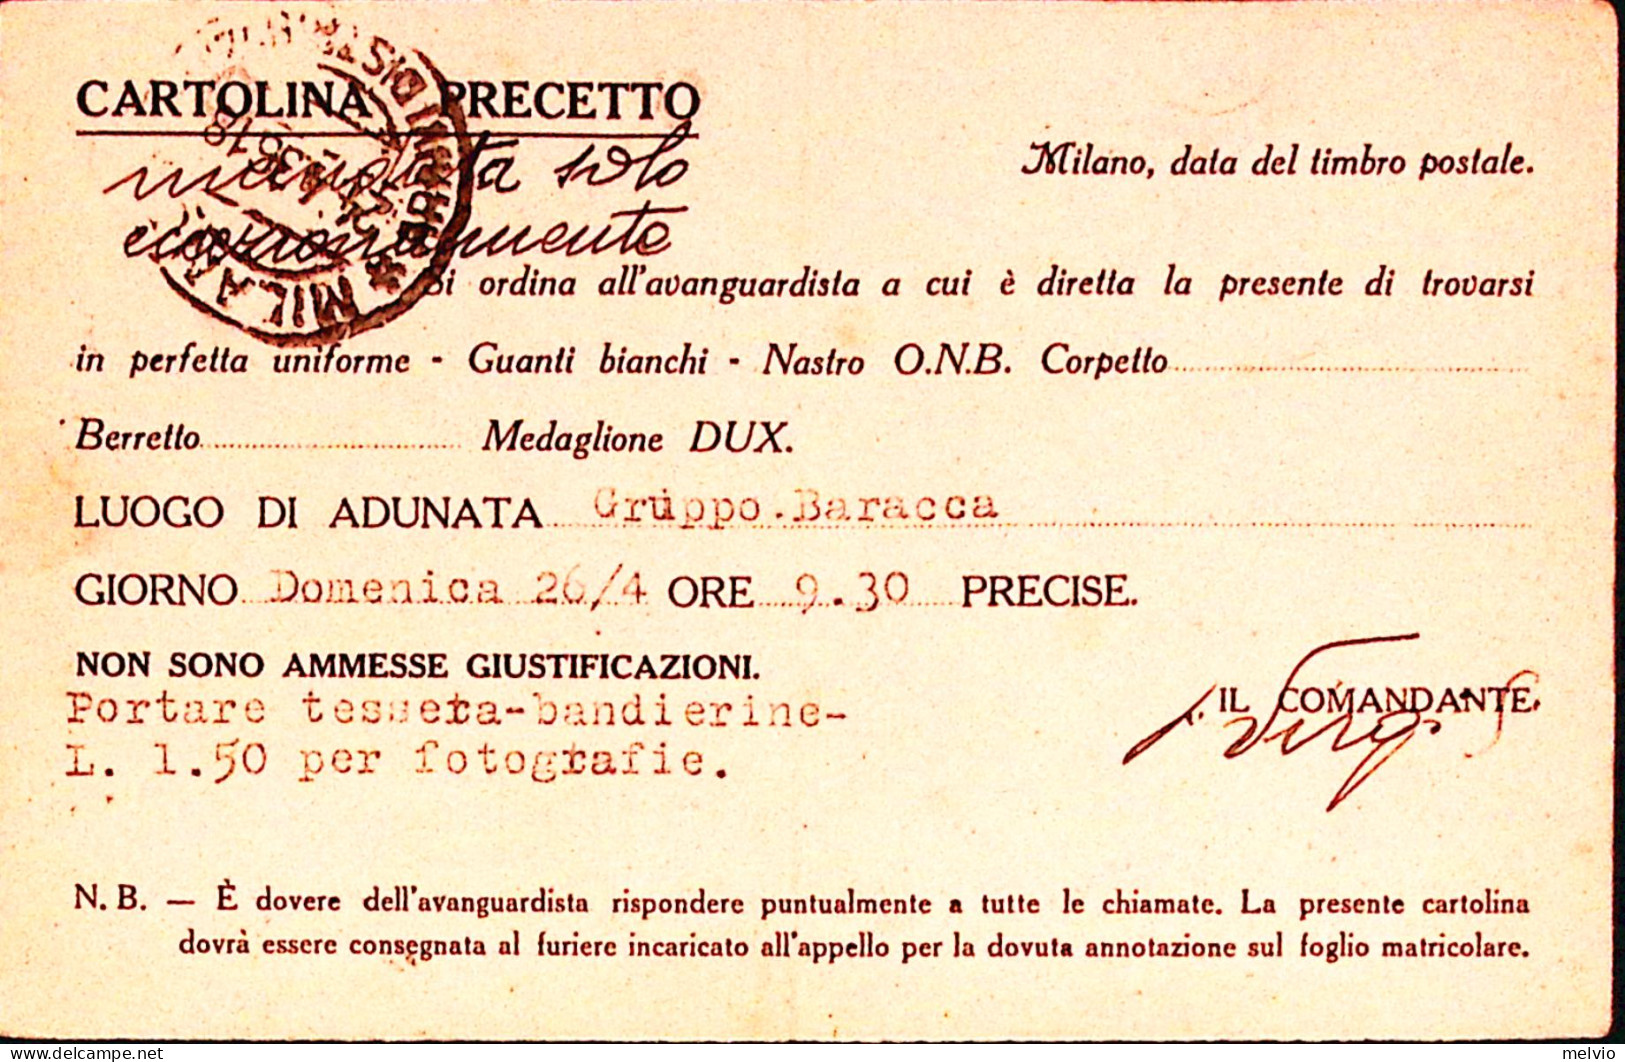 1936-MILANO O.N.B 415 LEGIONE MARINAI Cartolina Invito Per Adunata Viaggiata Mil - Patrióticos